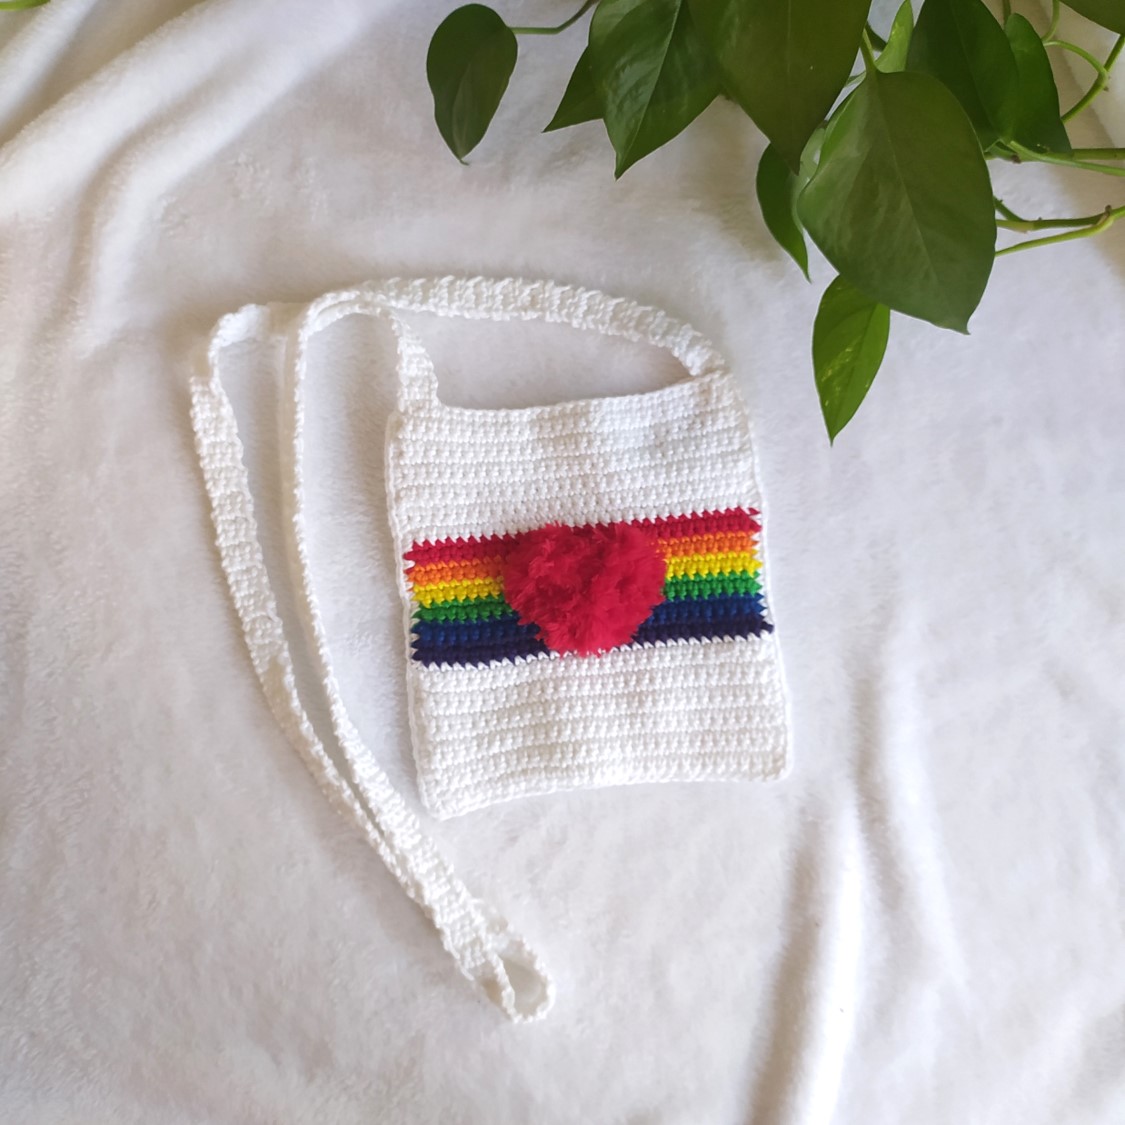 The Love Is Love Bag Crochet Pattern